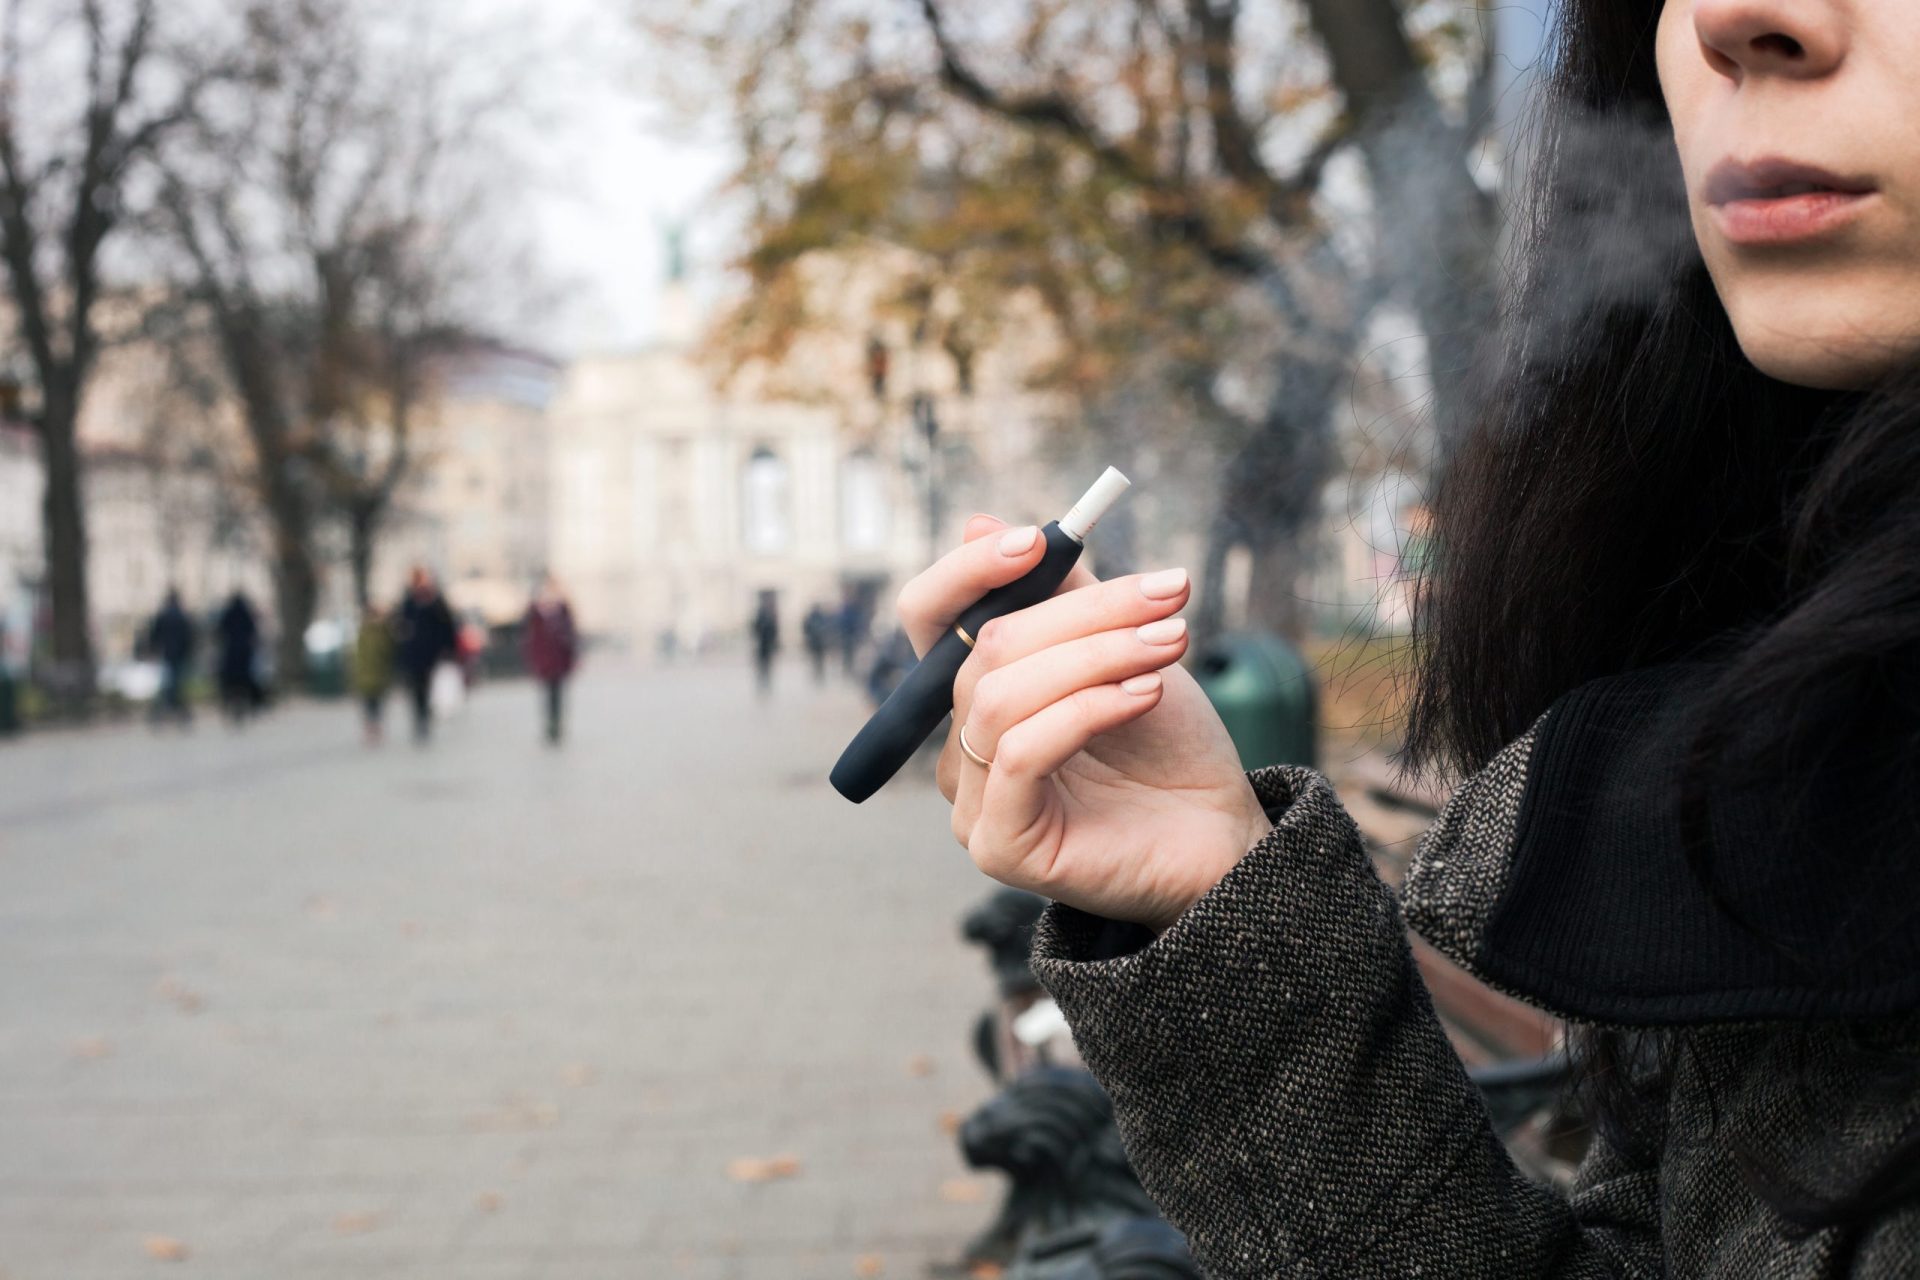 Médicos aconselhados a denunciar casos suspeitos de doença ligados aos cigarros eletrónicos em Portugal